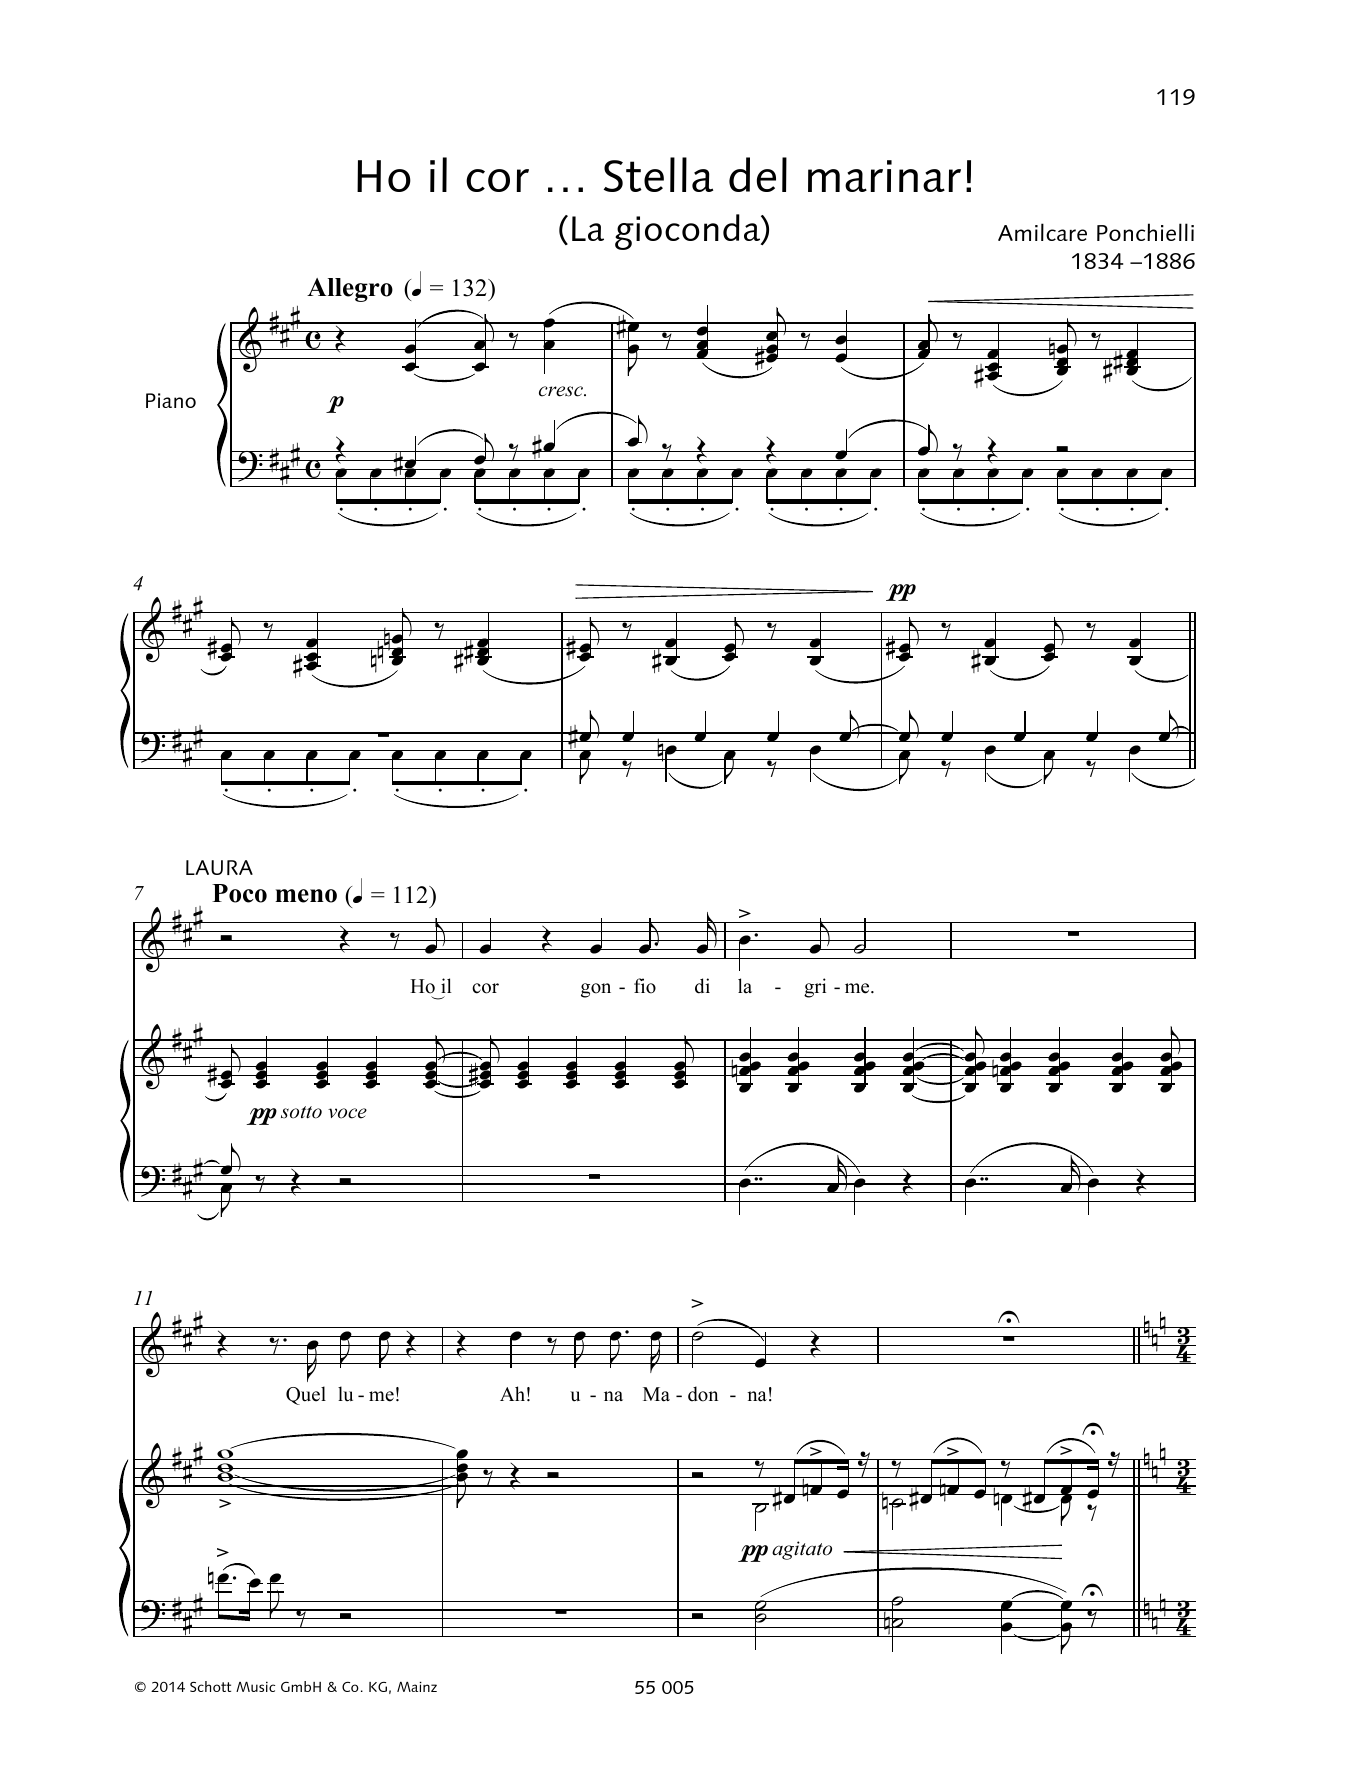 Download Francesca Licciarda Ho il cor... Stella del miranar! Sheet Music and learn how to play Piano & Vocal PDF digital score in minutes